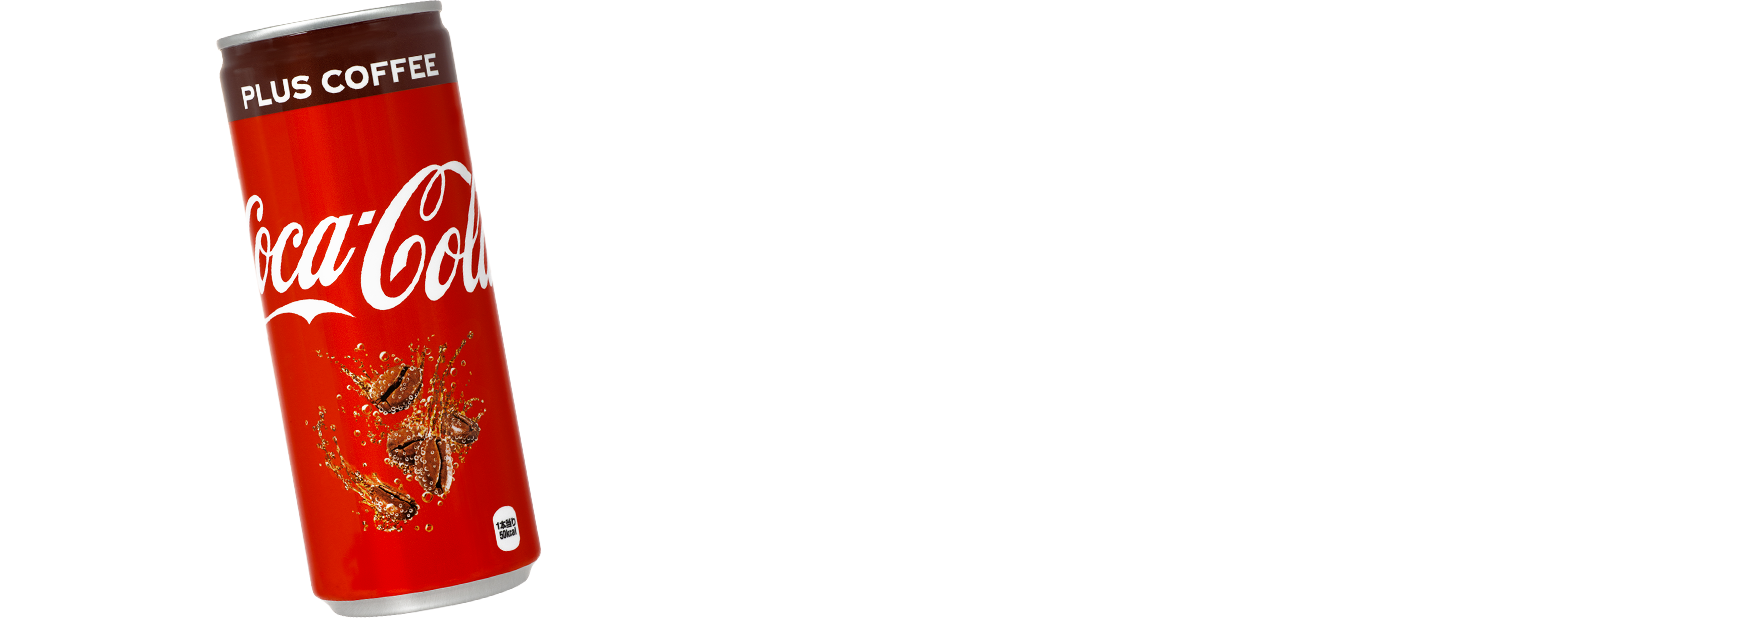 JAPAN EXCLUSIVE COCA COLAPLUS COFFEE AVAILABLE INTHE JULY AMAIBOX GIGA!